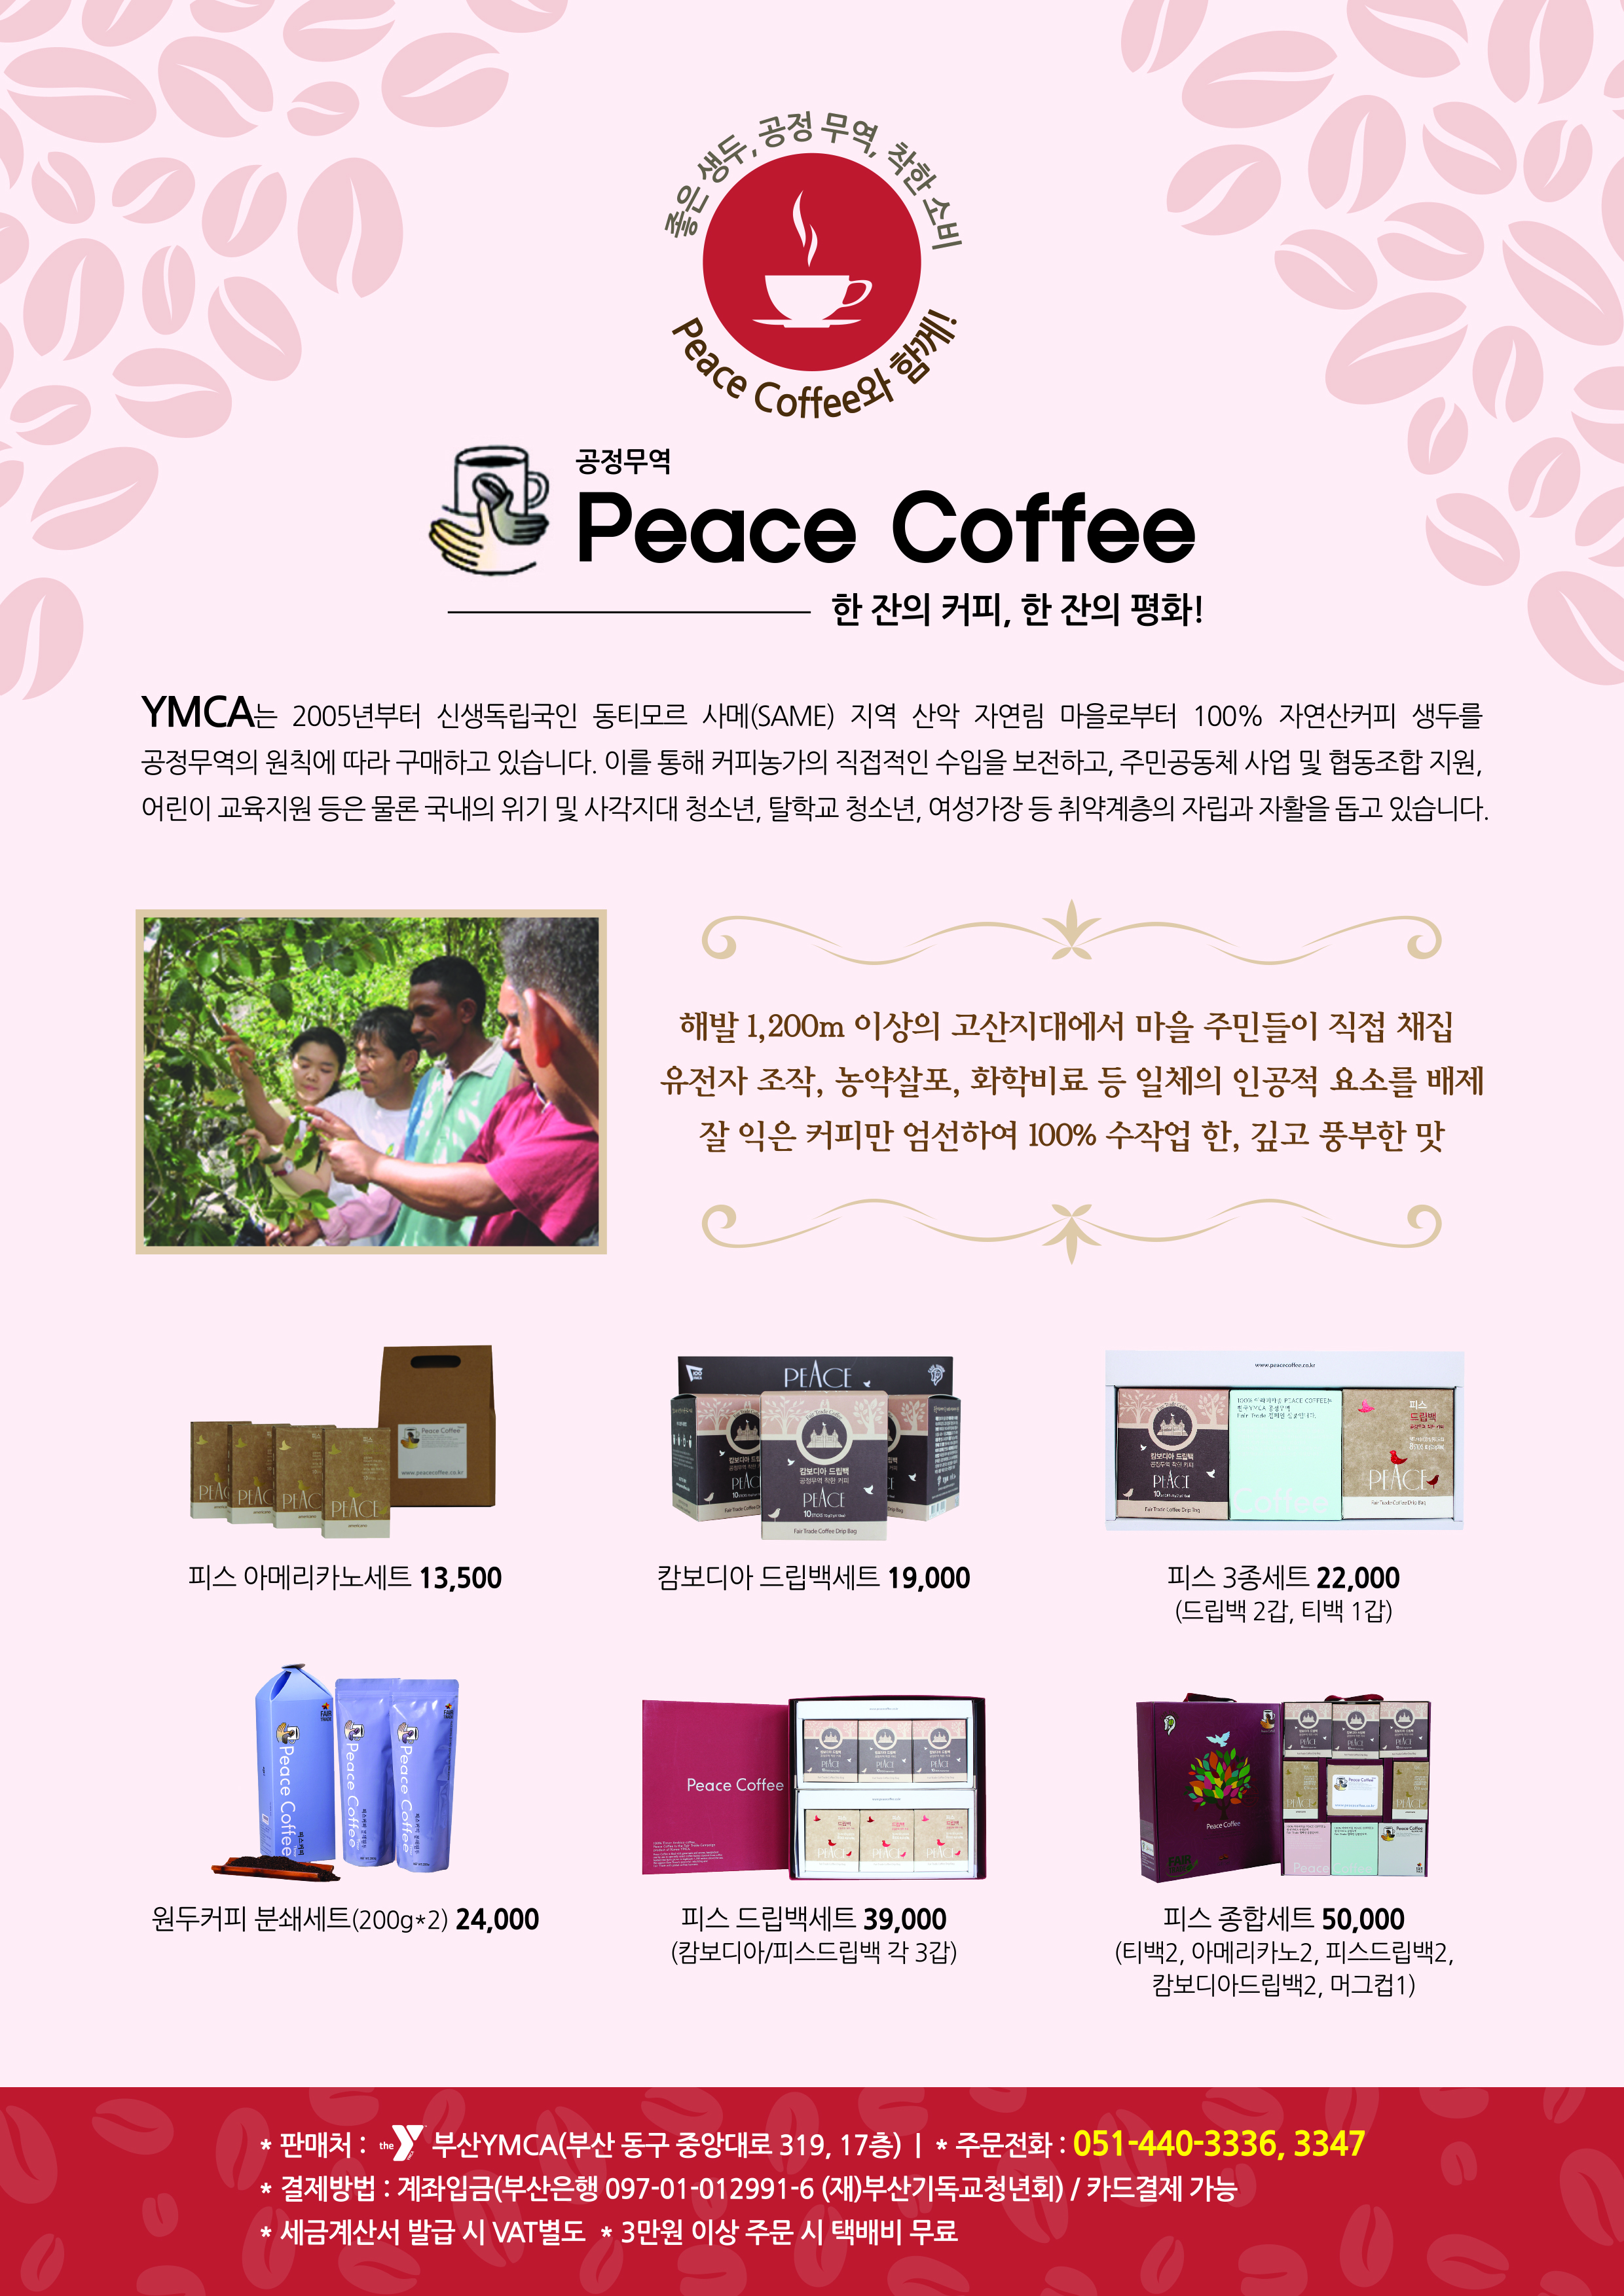 peacecoffee.jpg